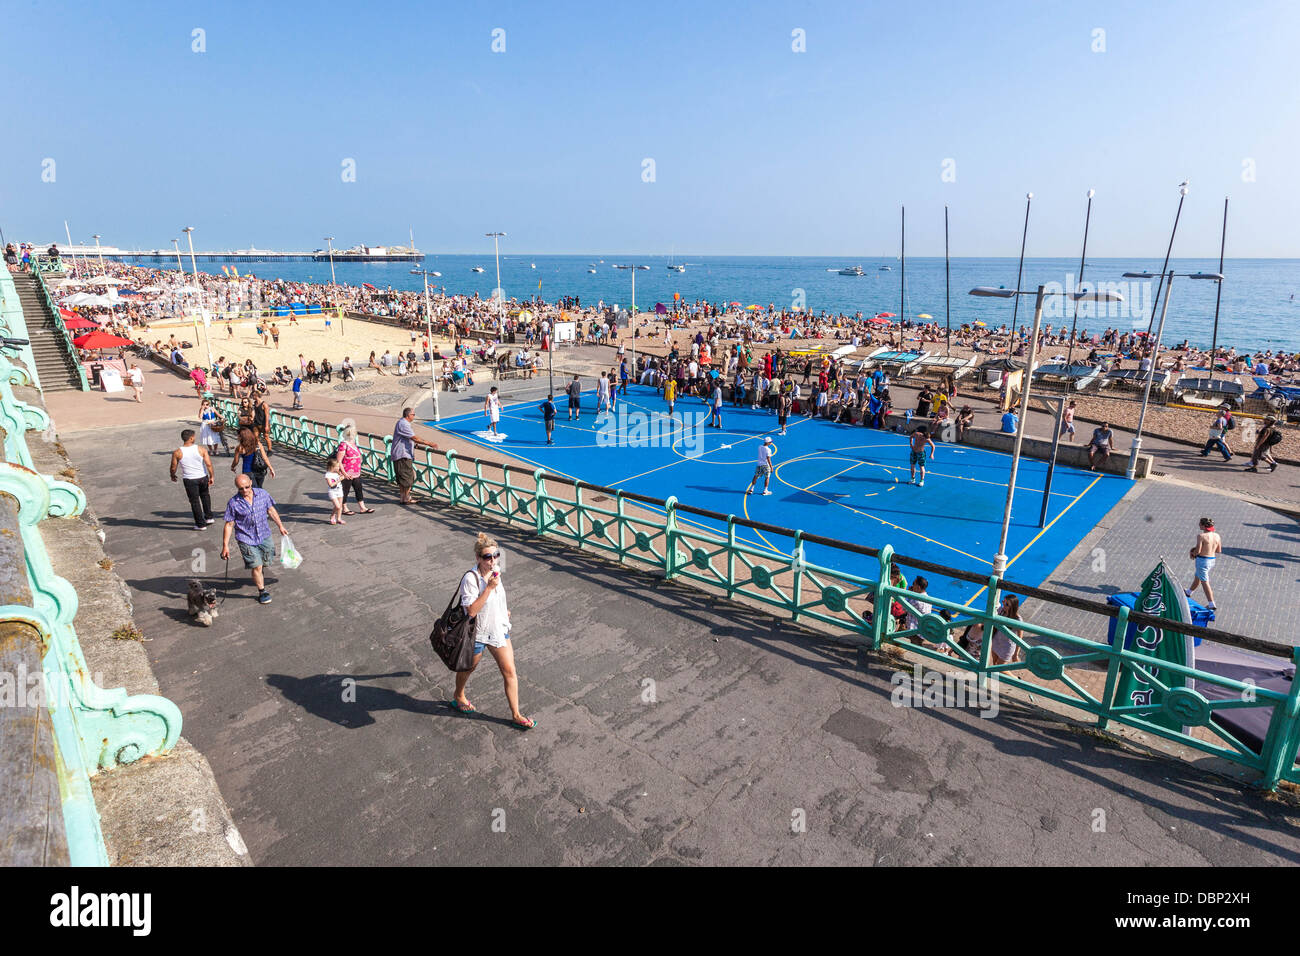 Menschen, die eine Zugangsrampe neben einem Sportbereich an der Strandpromenade von Brighton, Brighton, England, Großbritannien, erklimmen. Stockfoto